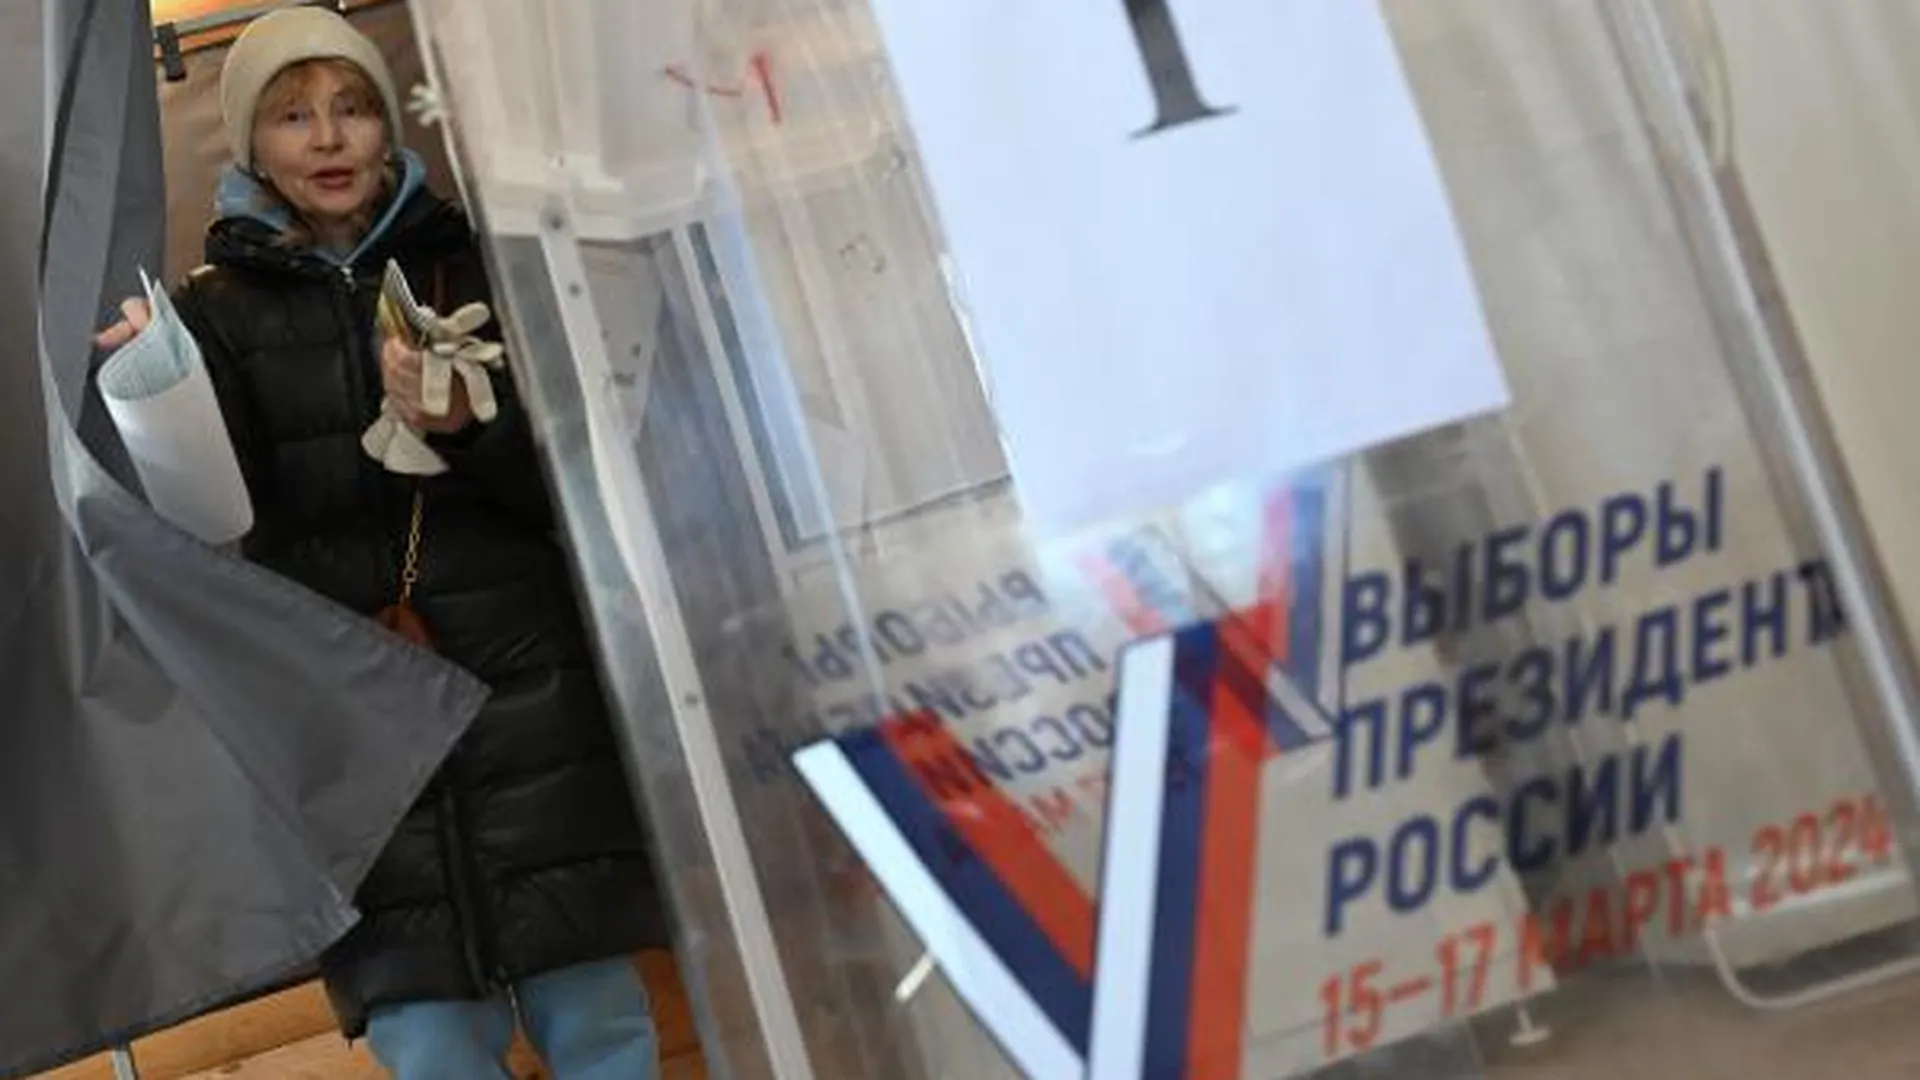 Последние избирательные участки закрылись в России